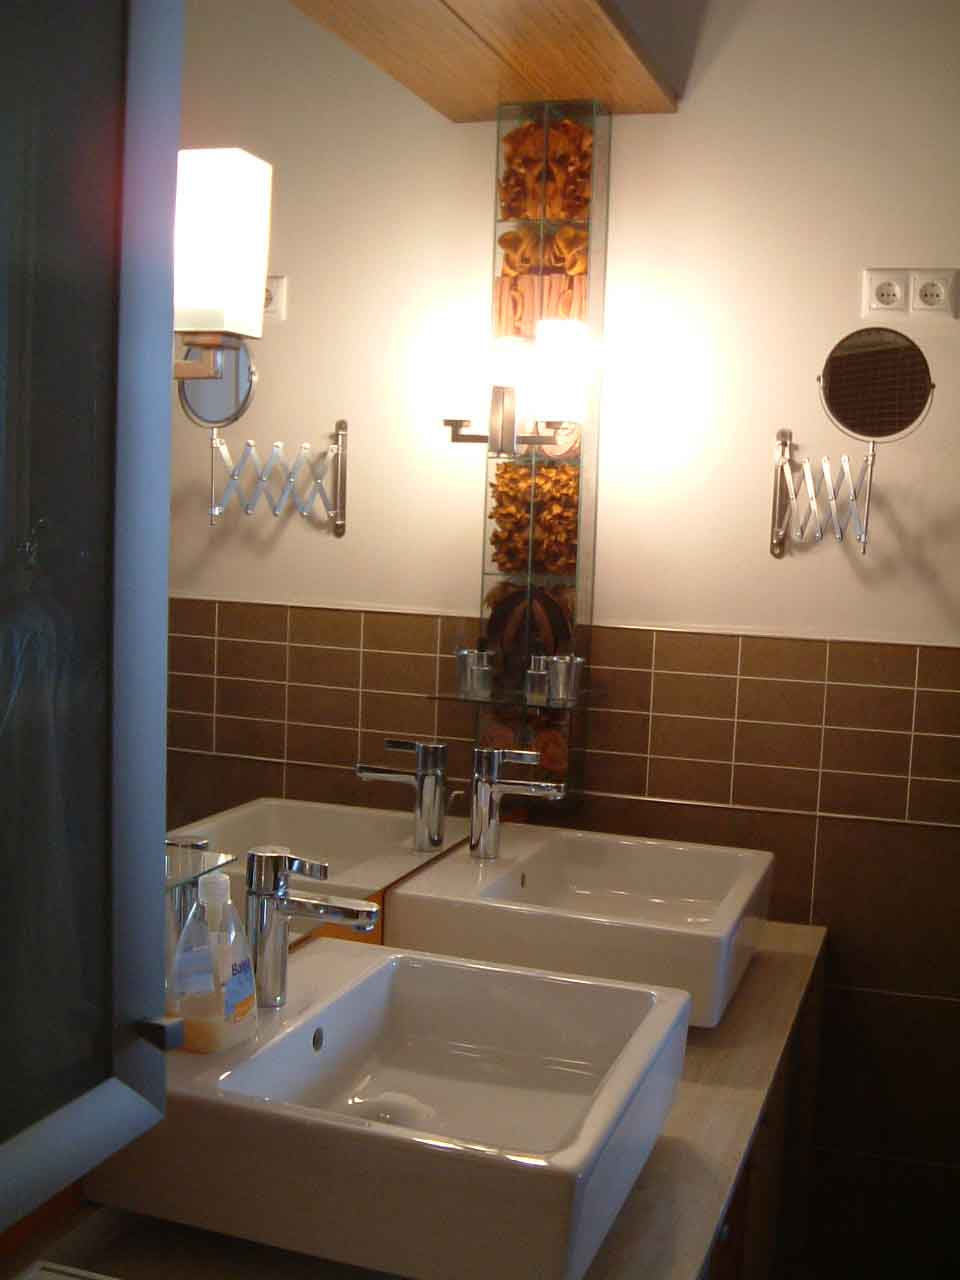 Színes társasházi lakás - fürdőszoba, mosdó